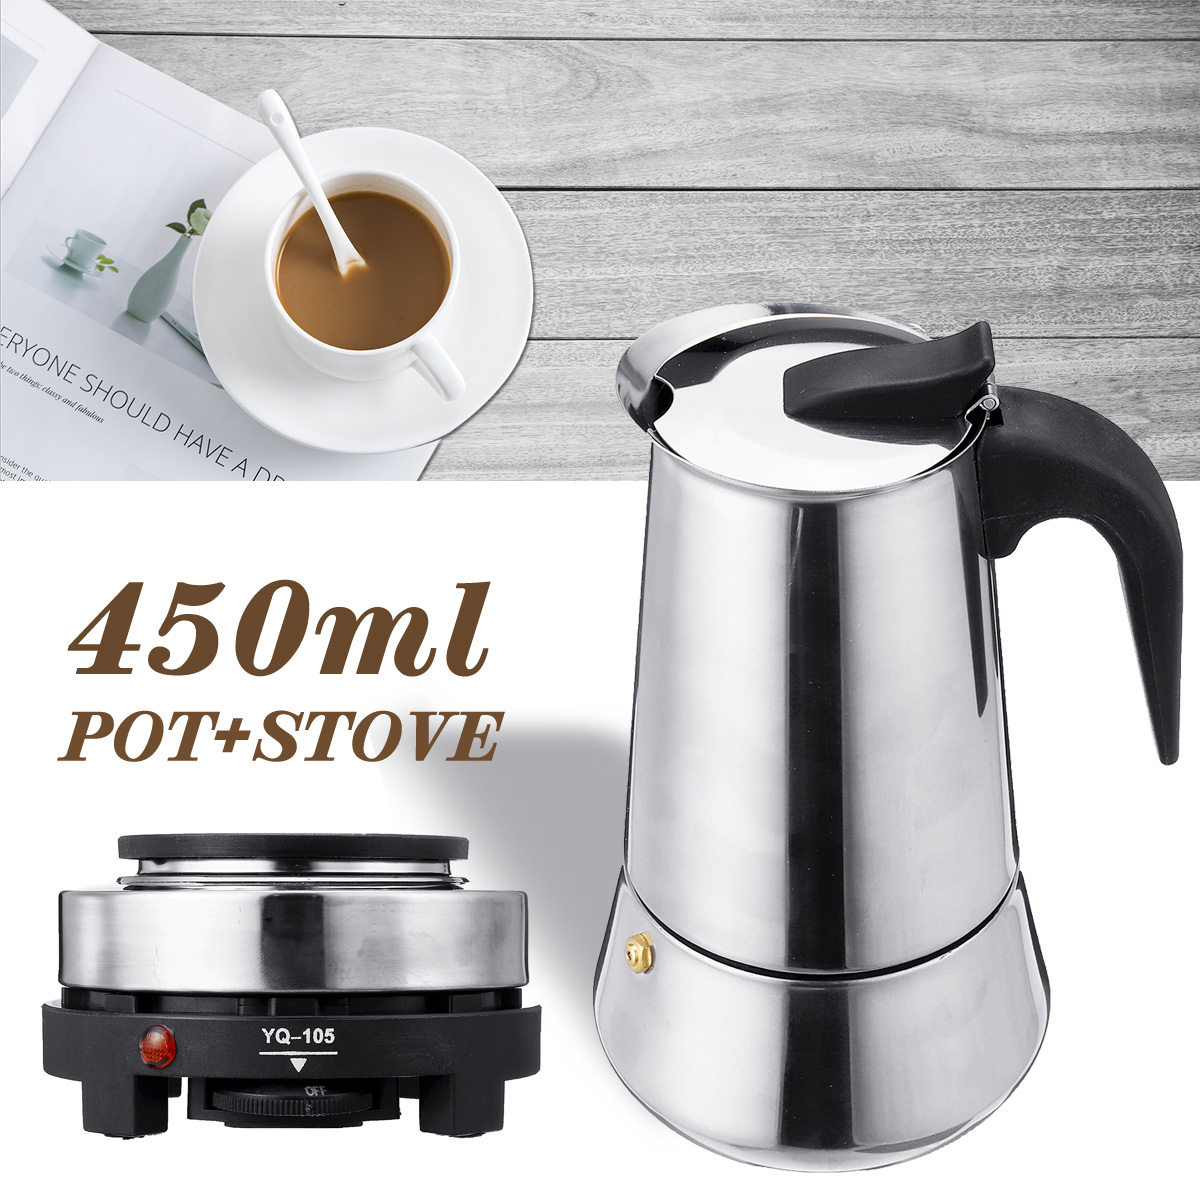 220V 500W 450ml Portable Coffee Espresso Pot Maker & Electric Stove Home Kitchen Tools 14